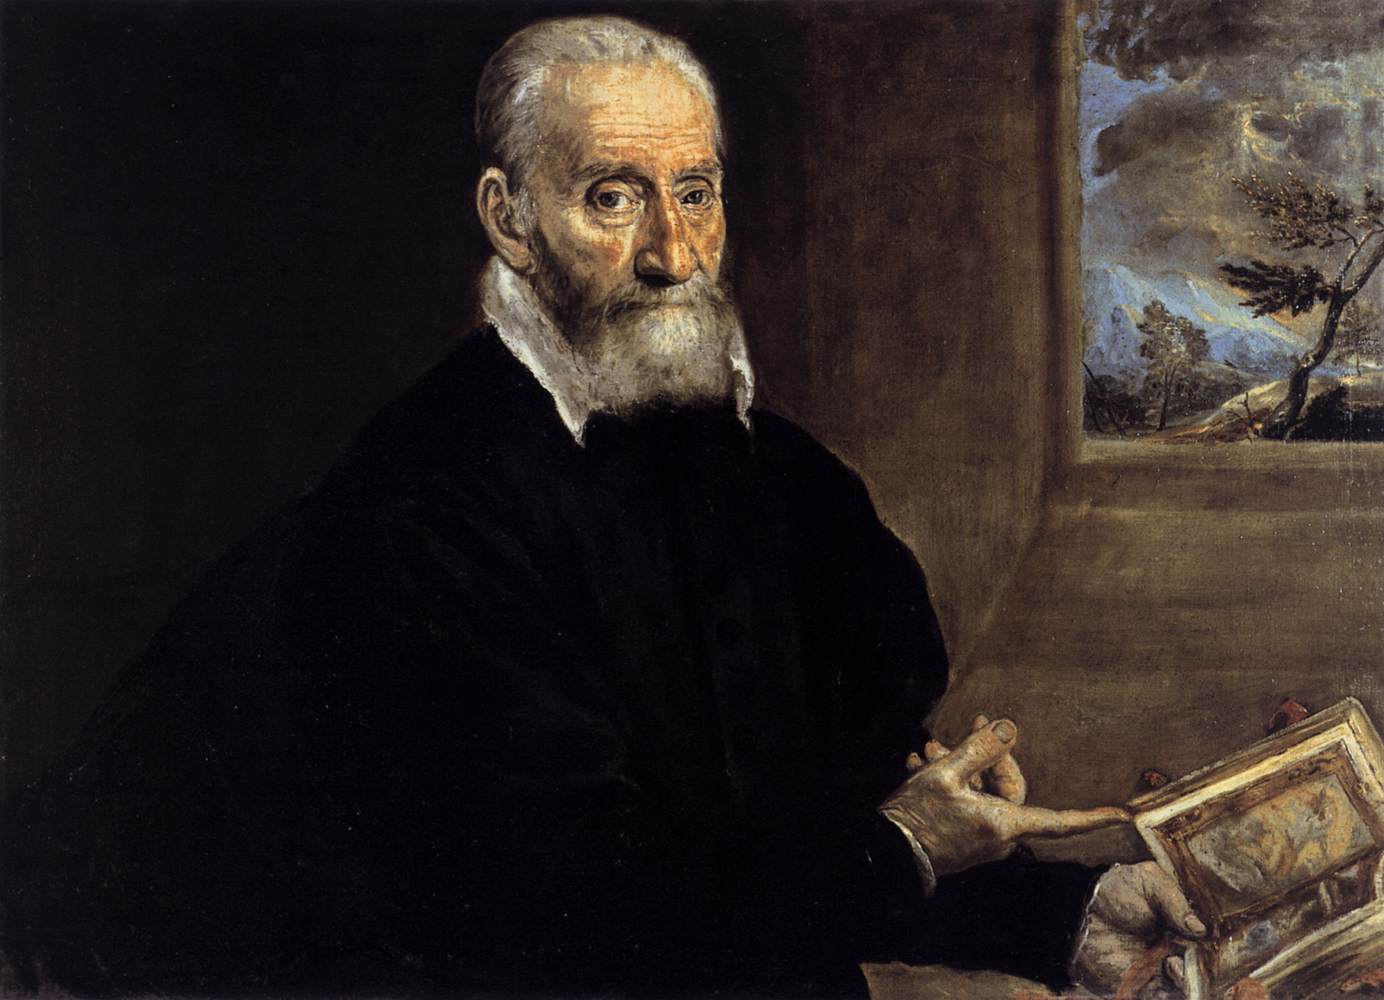 Portrait of Giulio Clovio by El Greco